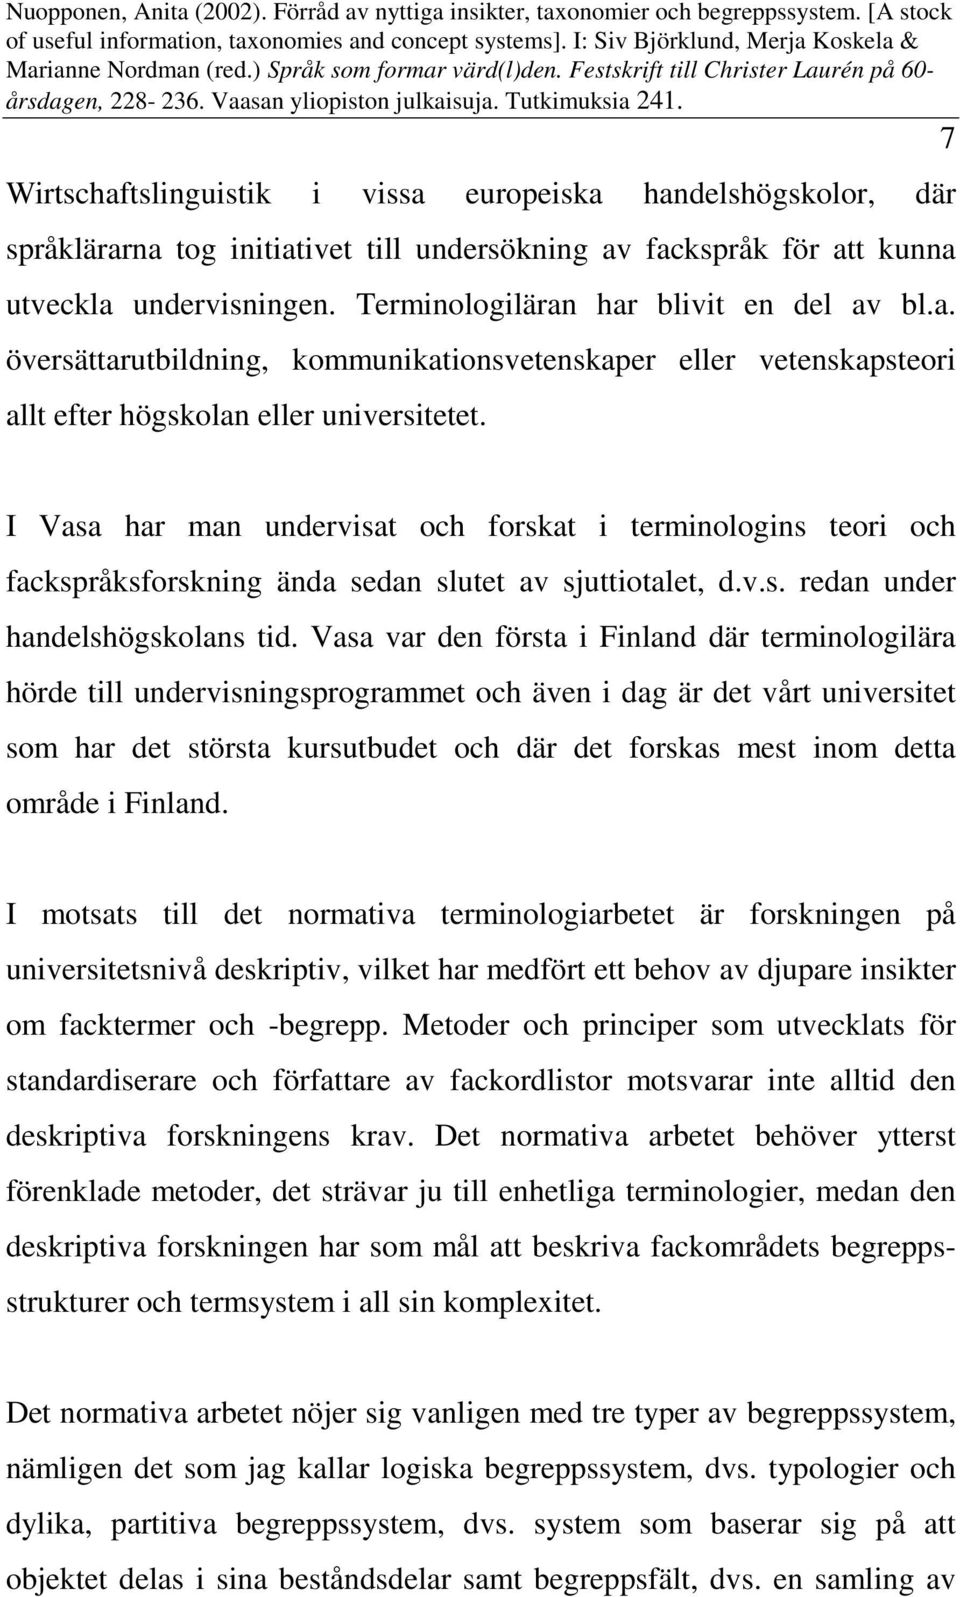 I Vasa har man undervisat och forskat i terminologins teori och fackspråksforskning ända sedan slutet av sjuttiotalet, d.v.s. redan under handelshögskolans tid.